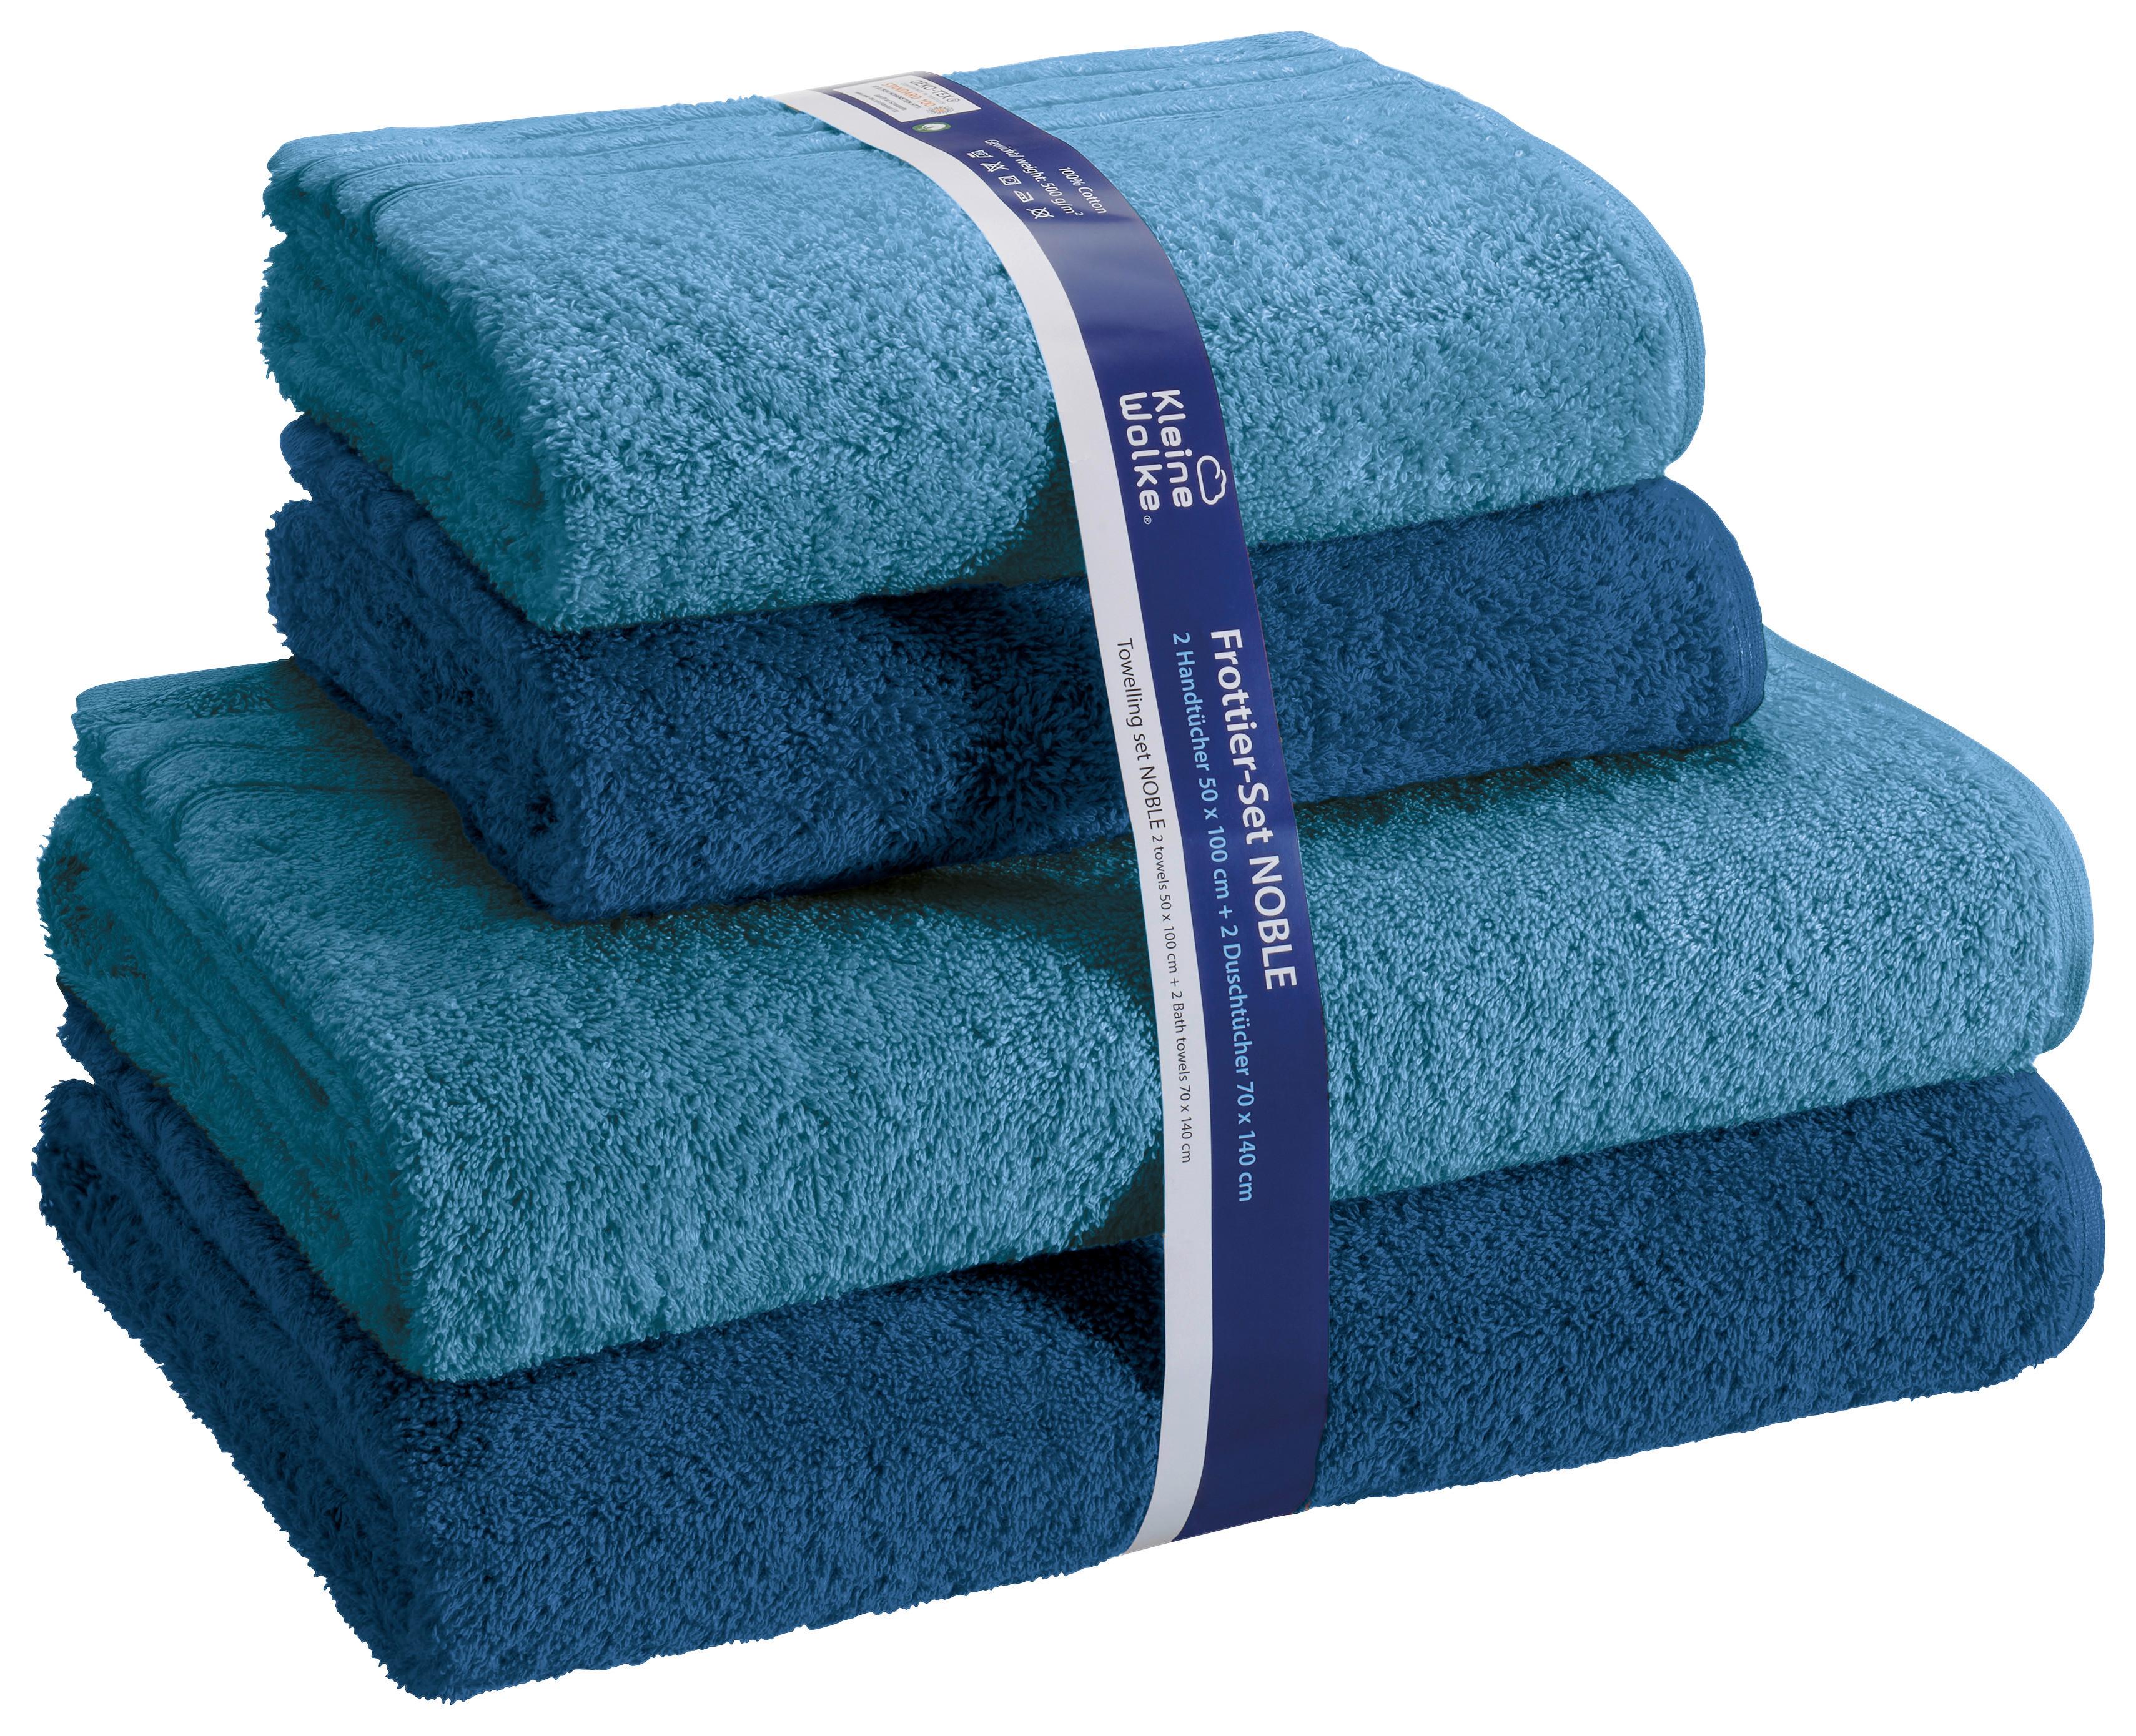 Handtuch Set Noble 4-Tlg. Frottee Blau - Blau, KONVENTIONELL, Textil (24/24/36cm) - Kleine Wolke